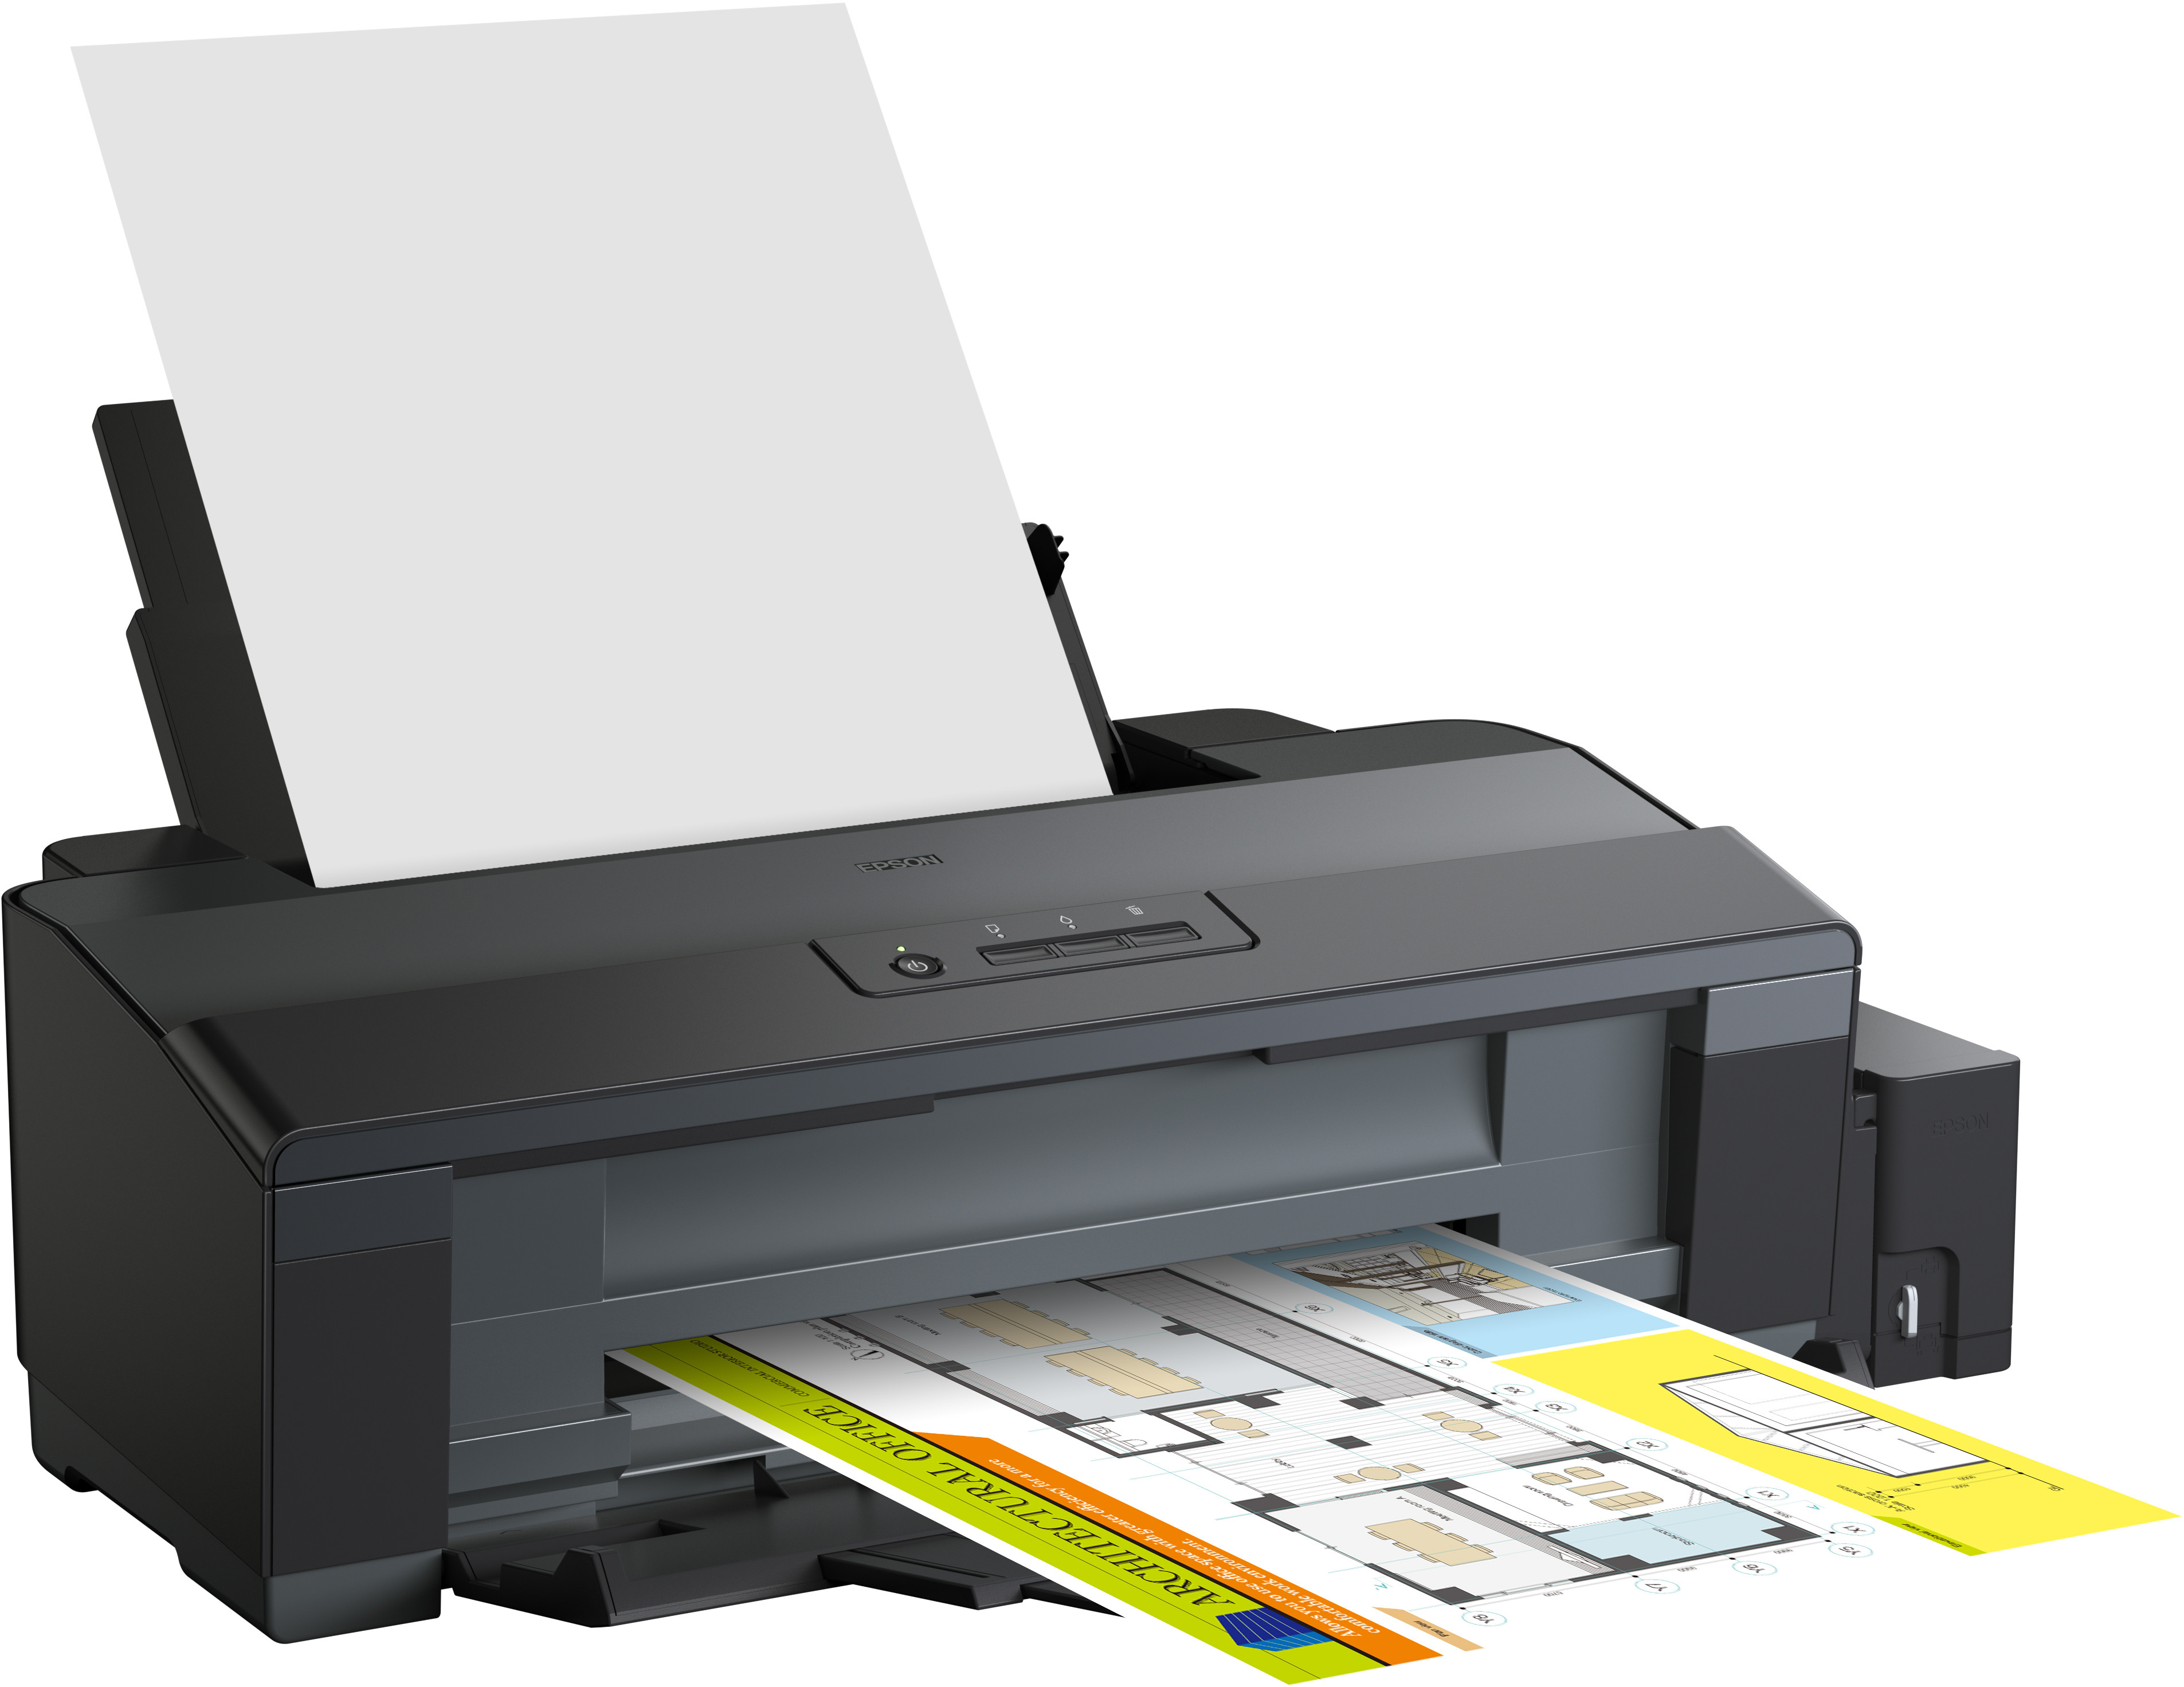 Принтер для распечатки документов. Принтер a3 Epson l1300. Принтер струйный Epson l1800. Принтер Epson а3 l1800. Принтер Эпсон 1300.